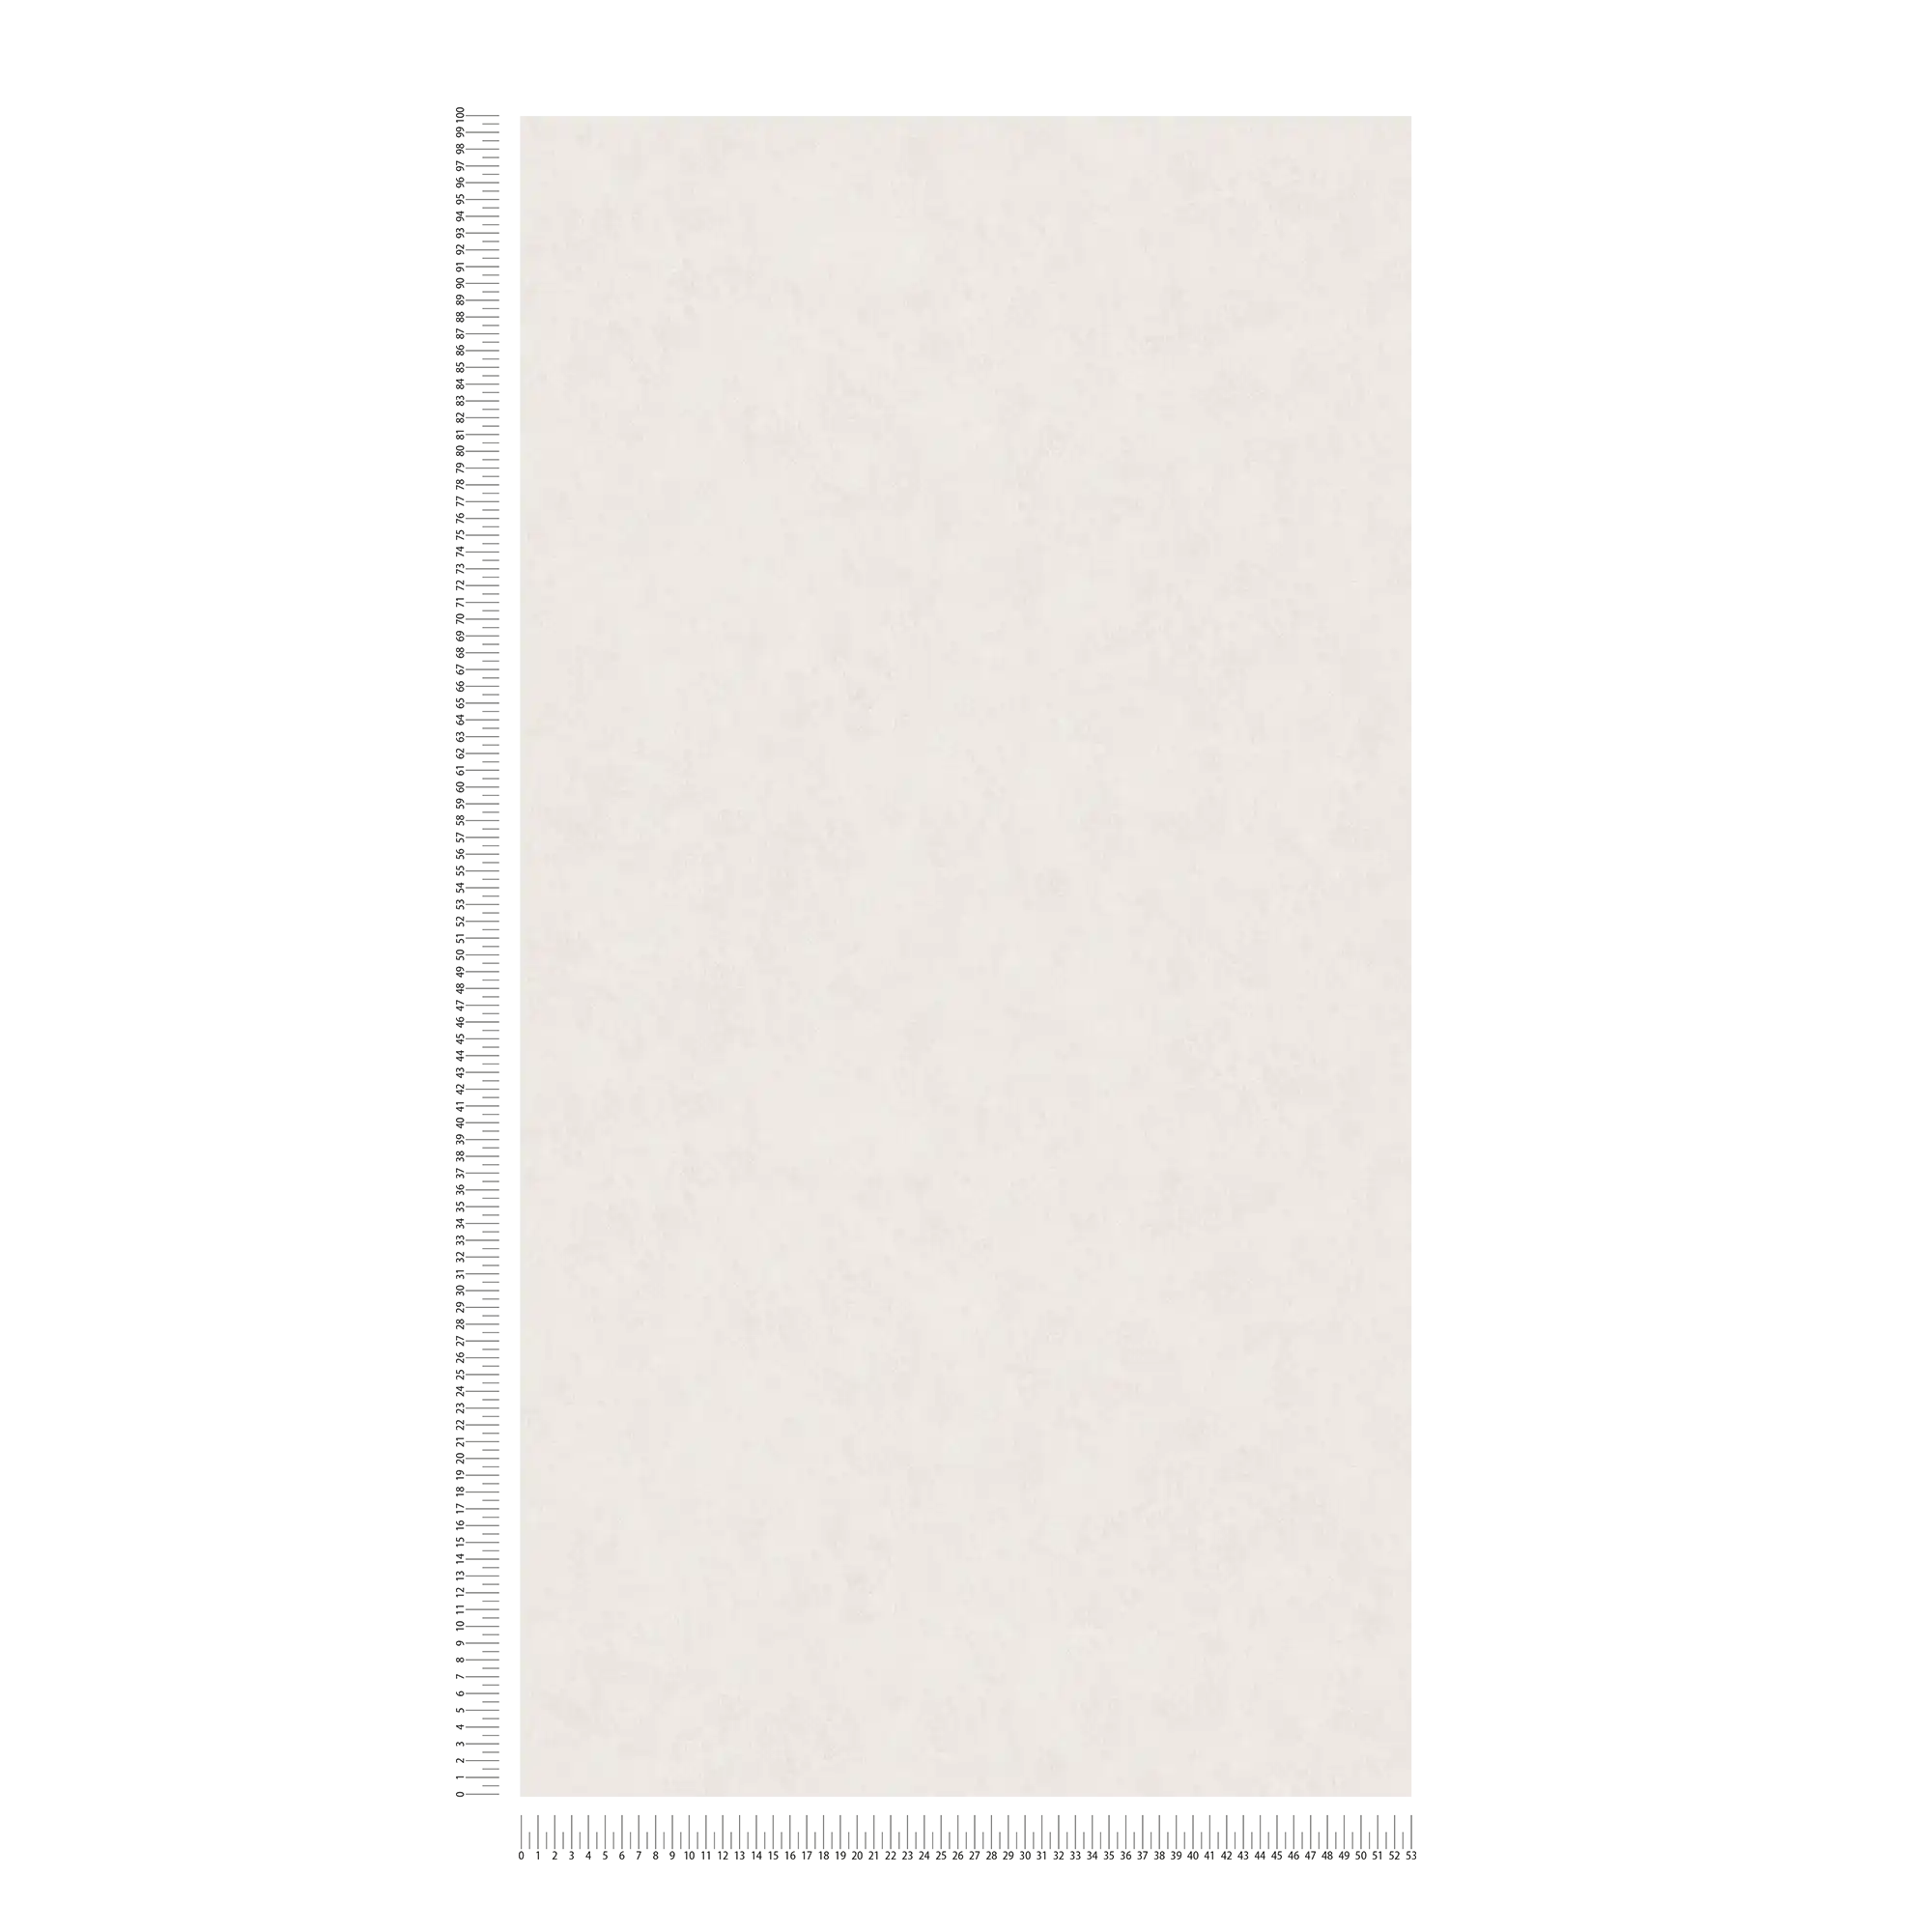             Non-woven wallpaper plain in plaster look - cream
        